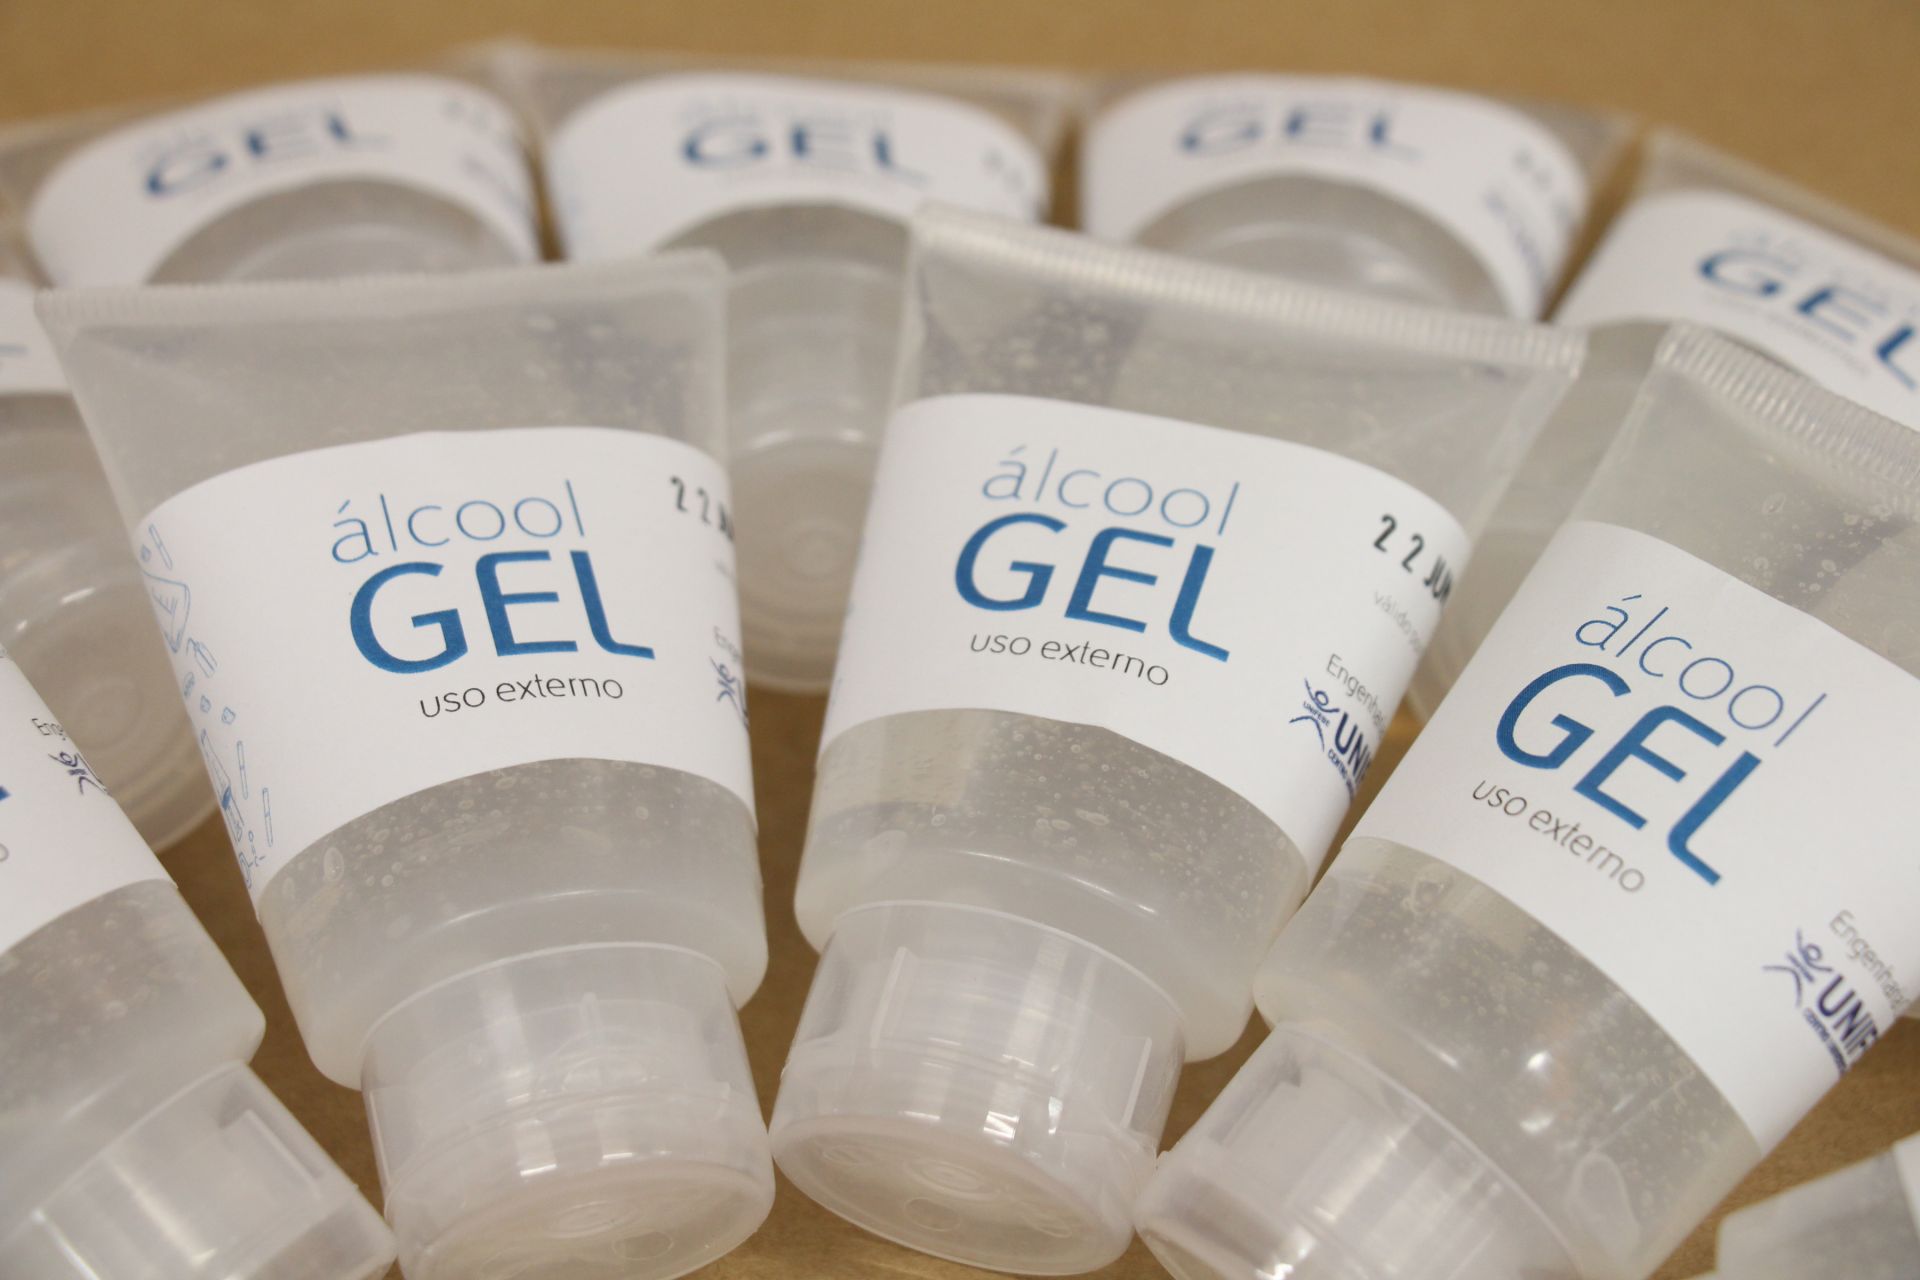 UNIFEBE produz e distribui álcool gel em ação contra H1N1